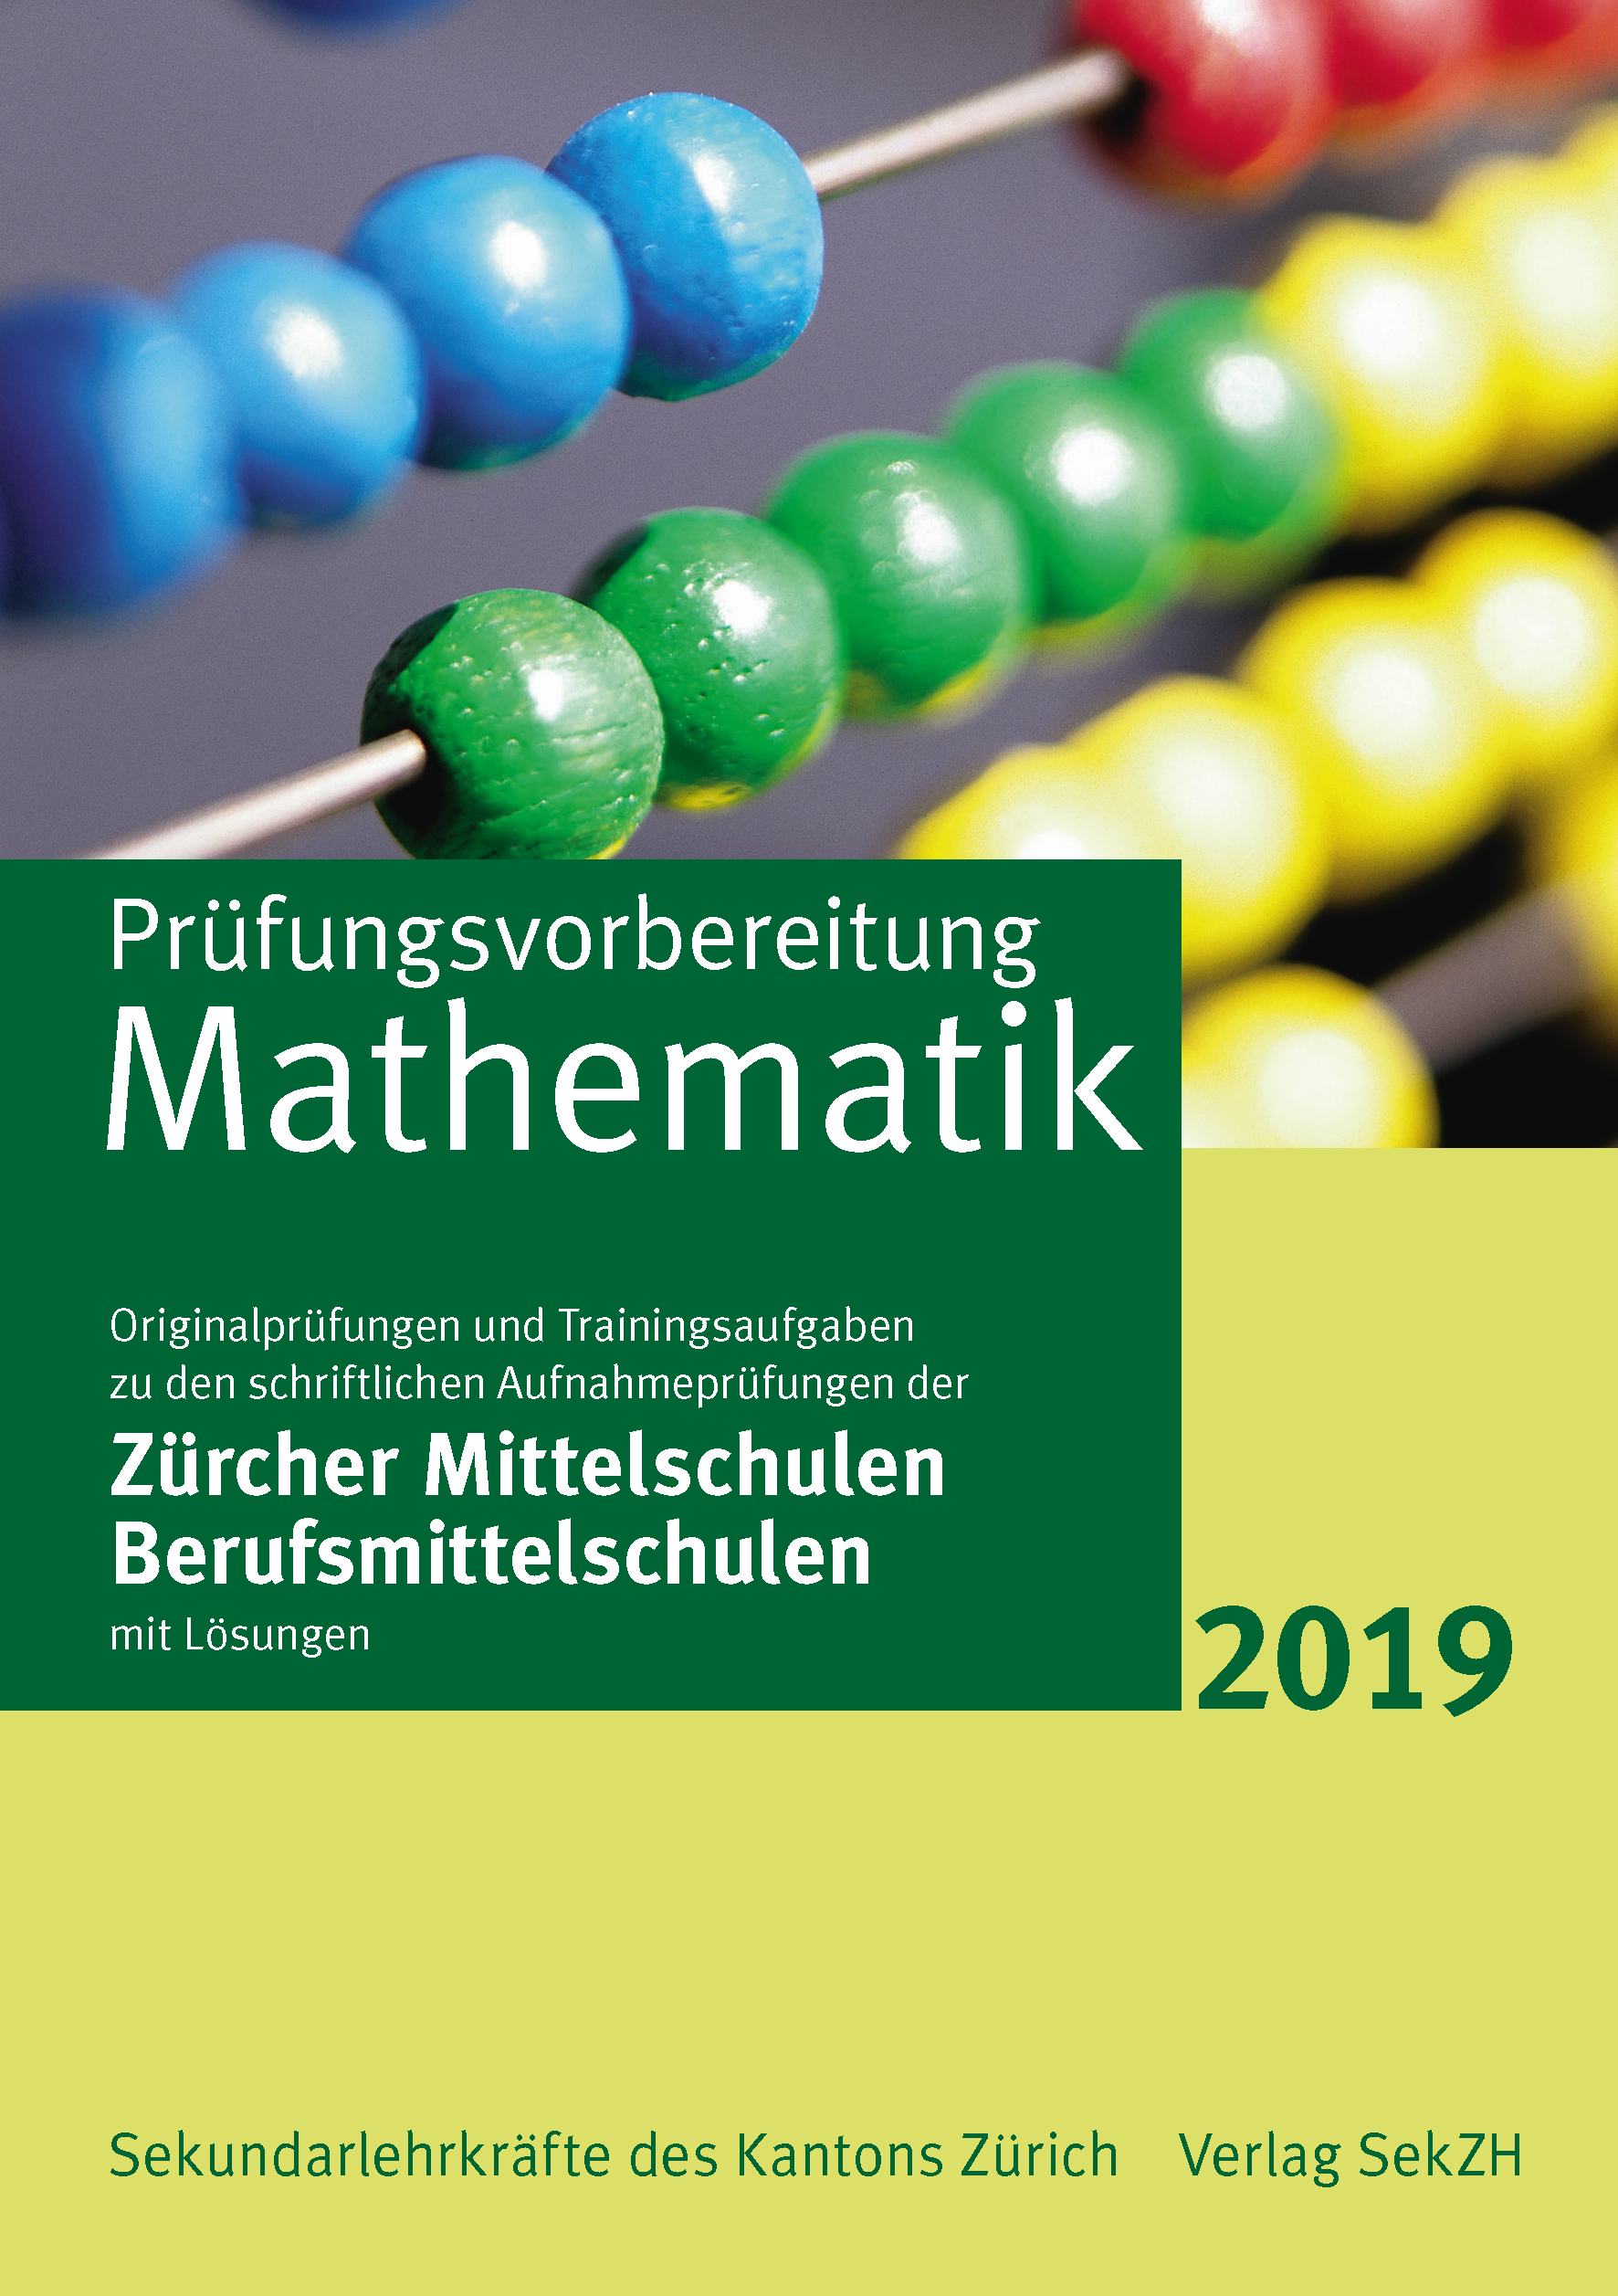 P702 - Prüfungsvorbereitung Mathematik 2019